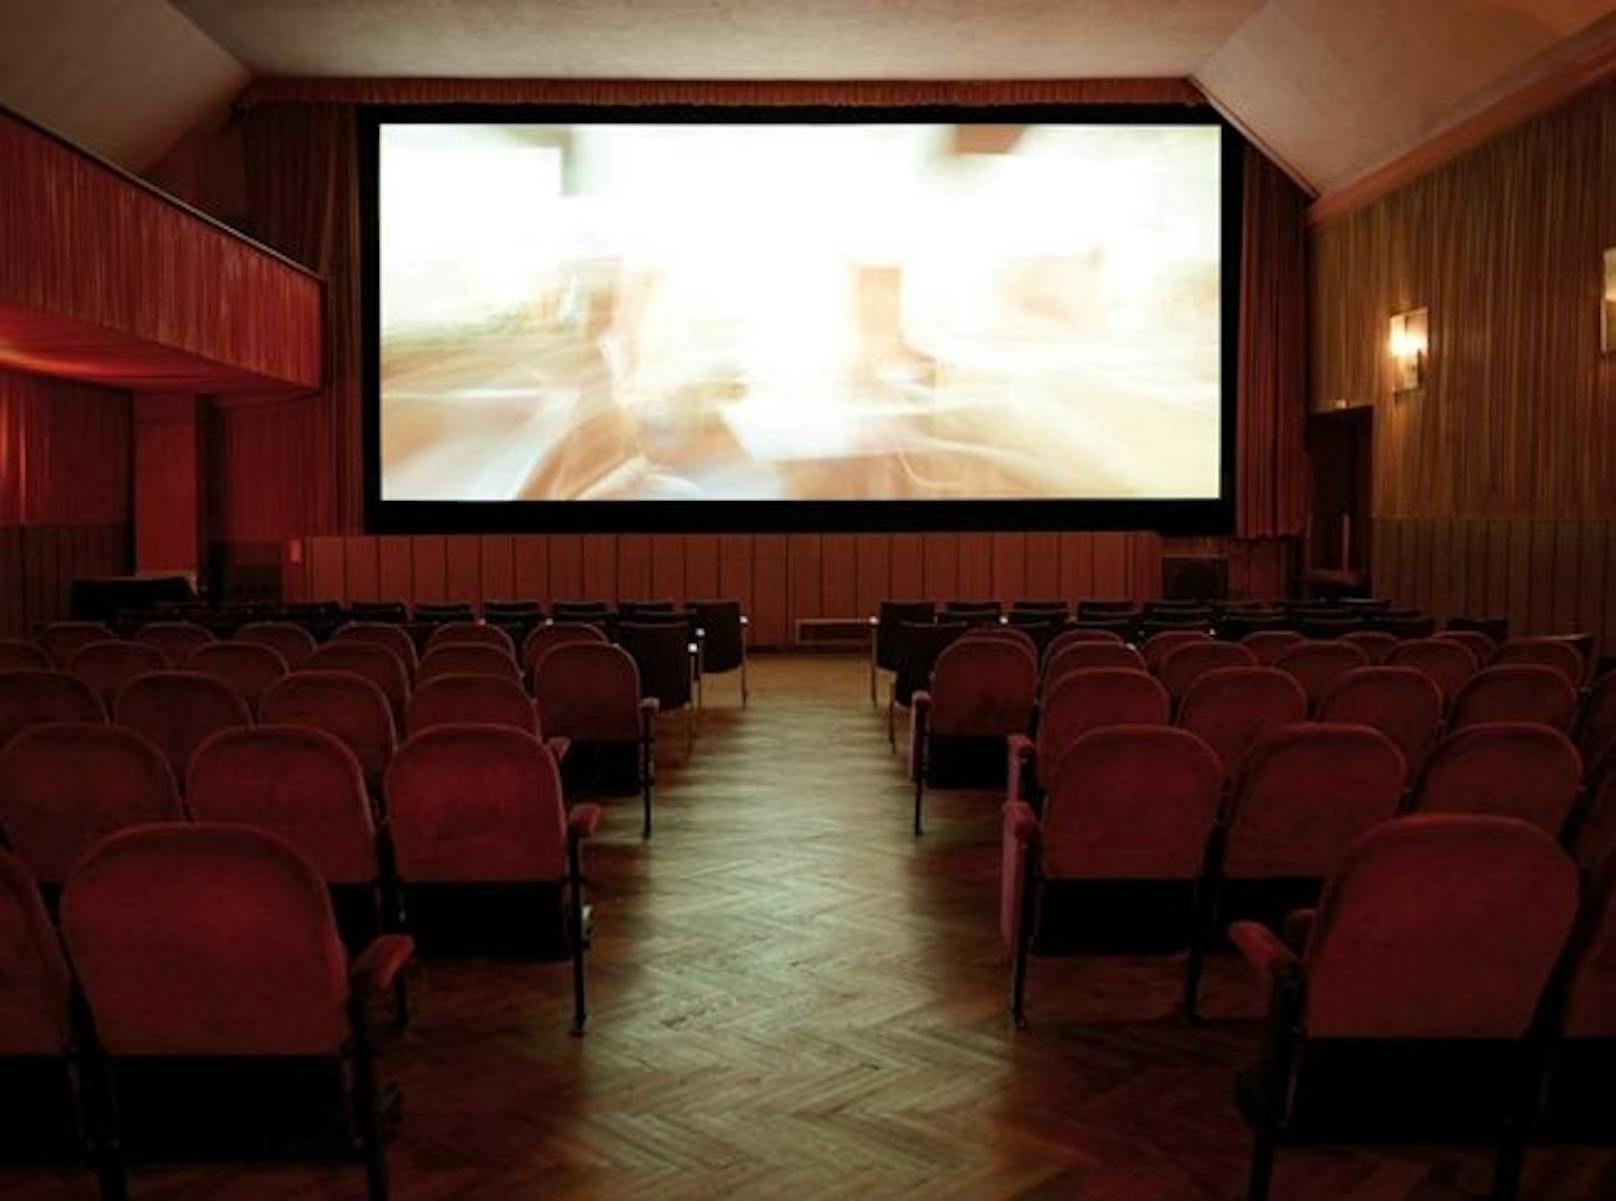 Der Verein "film.kunst.kino" will weiterhin Programmfilme spielen, der Betreiber des CityCine Stadtkinos zieht sich zurück.